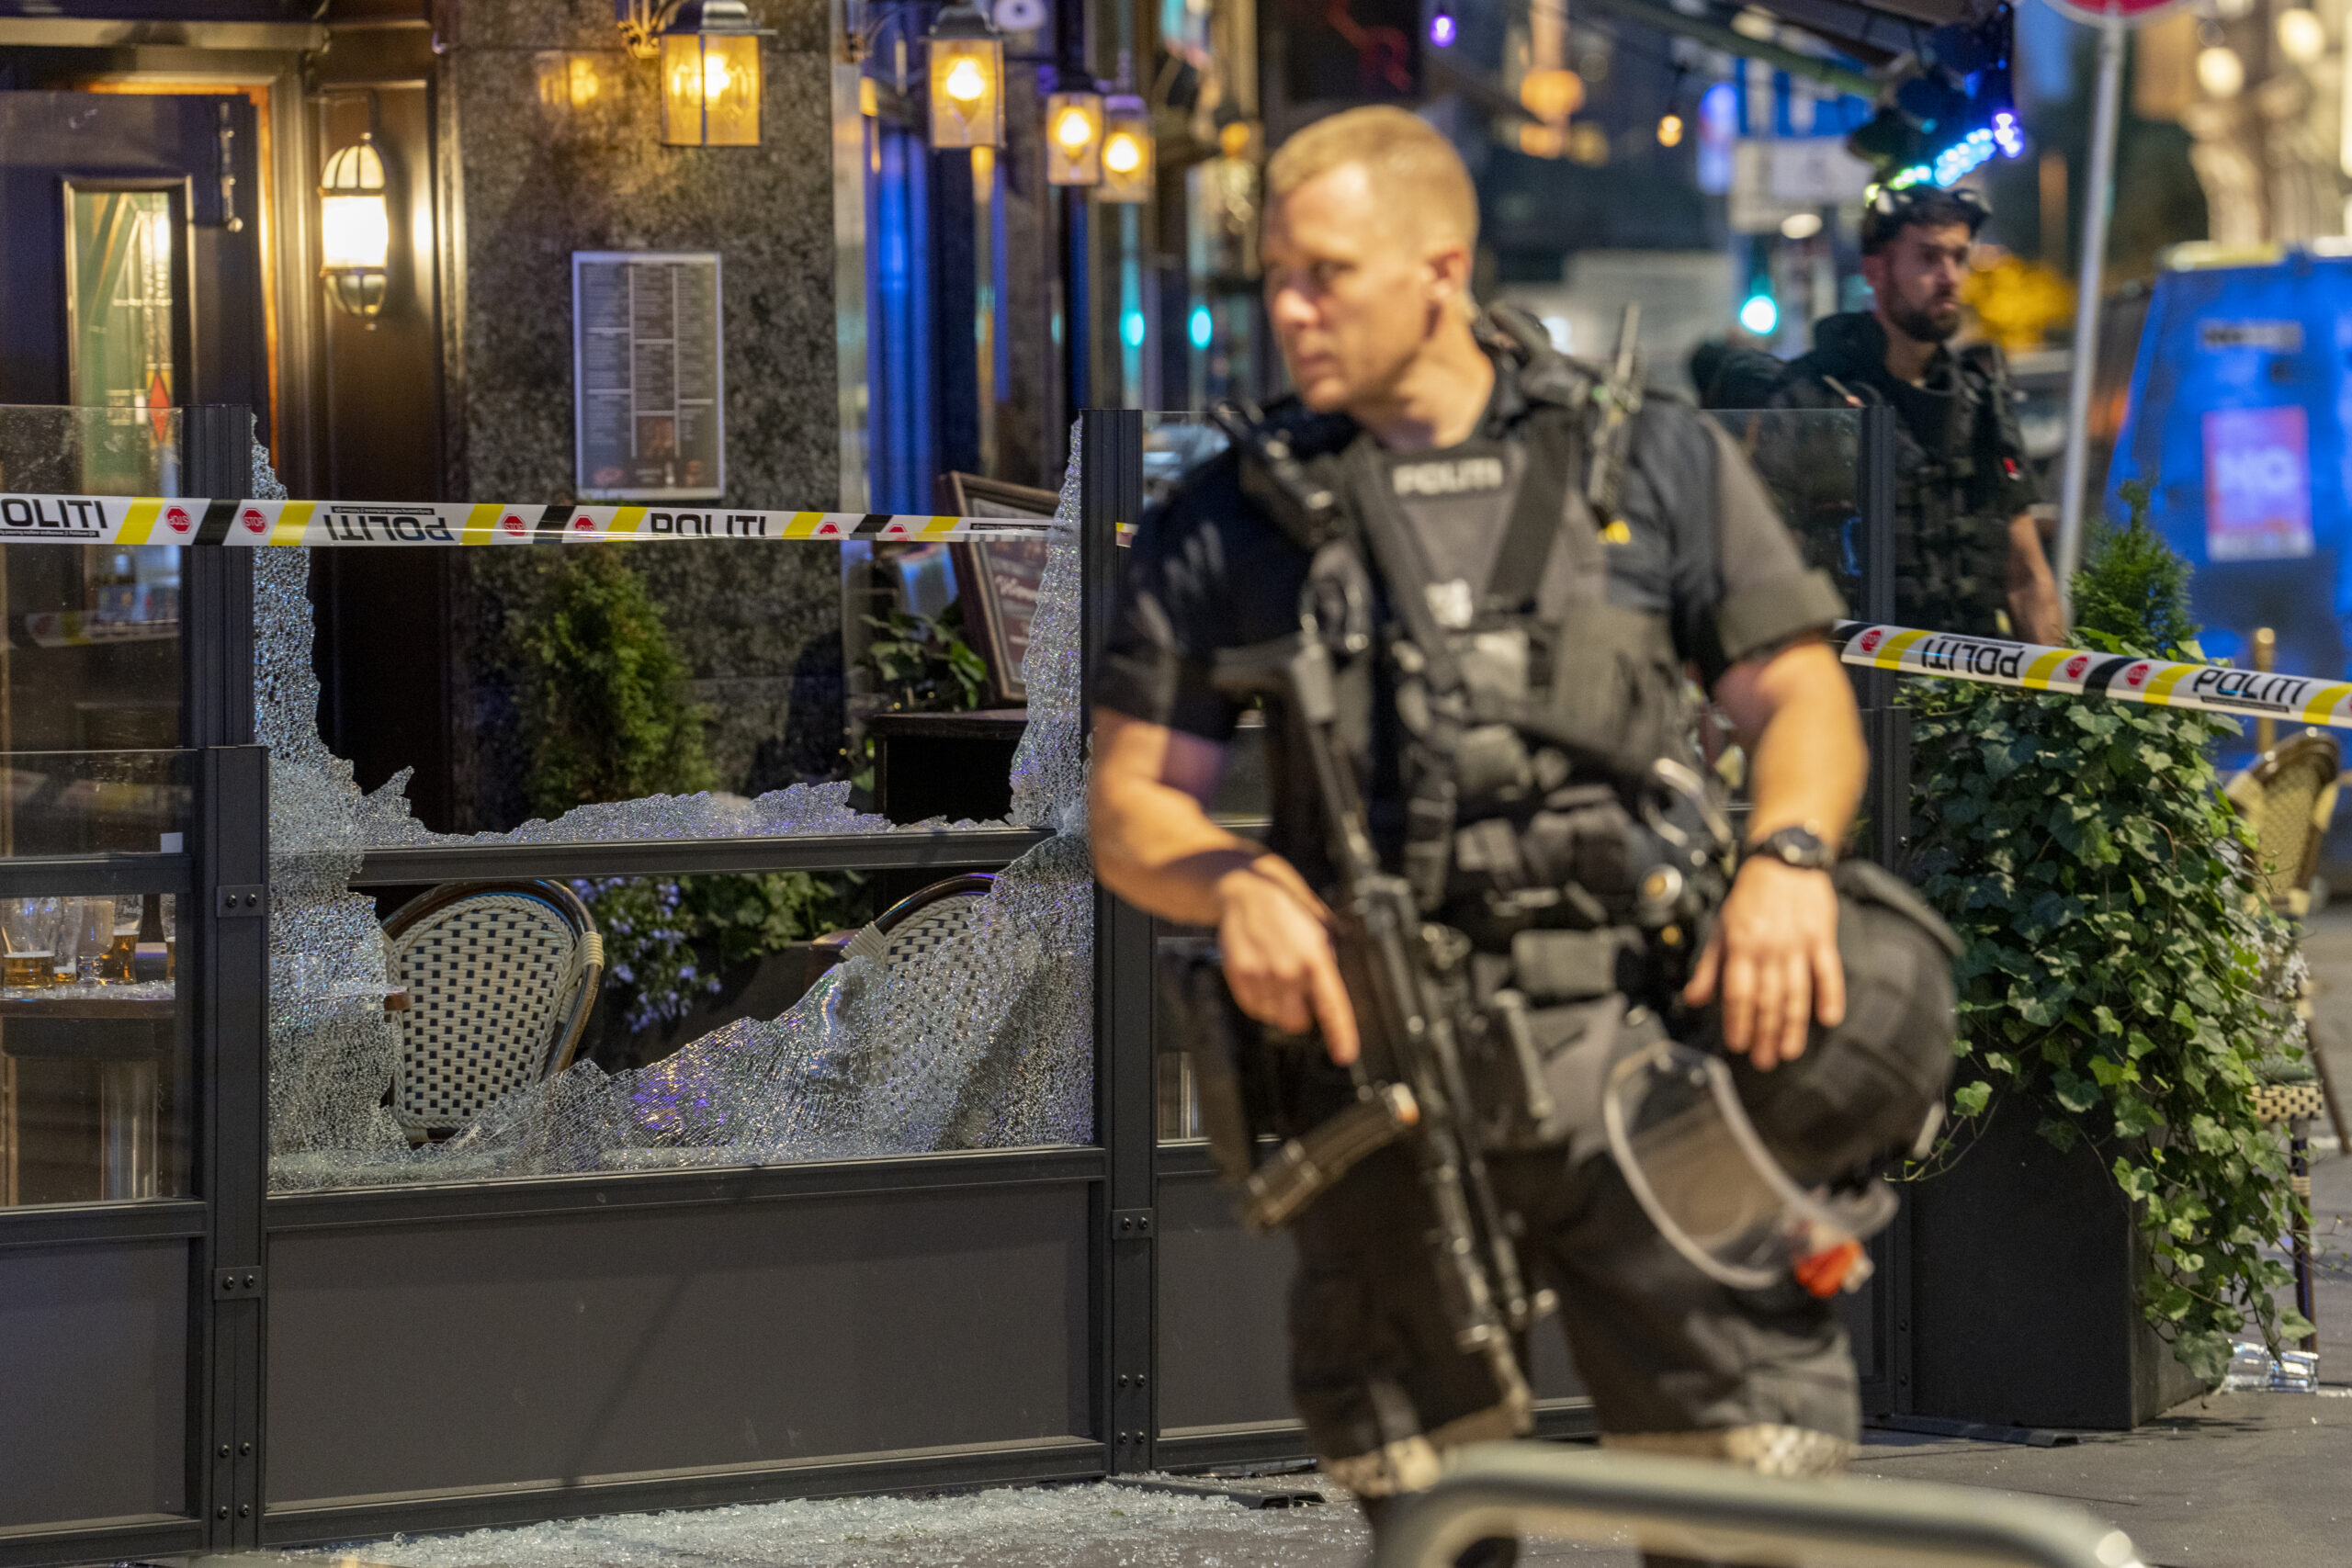 Oslo 20220625. Det er avfyrt flere skudd i 1.15-tiden natt til lørdag på utsiden av London pub i sentrum av Oslo. Flere er skadd, opplyser politiet. Foto: Javad Parsa / NTB zaniar matapour, arfan bhatti